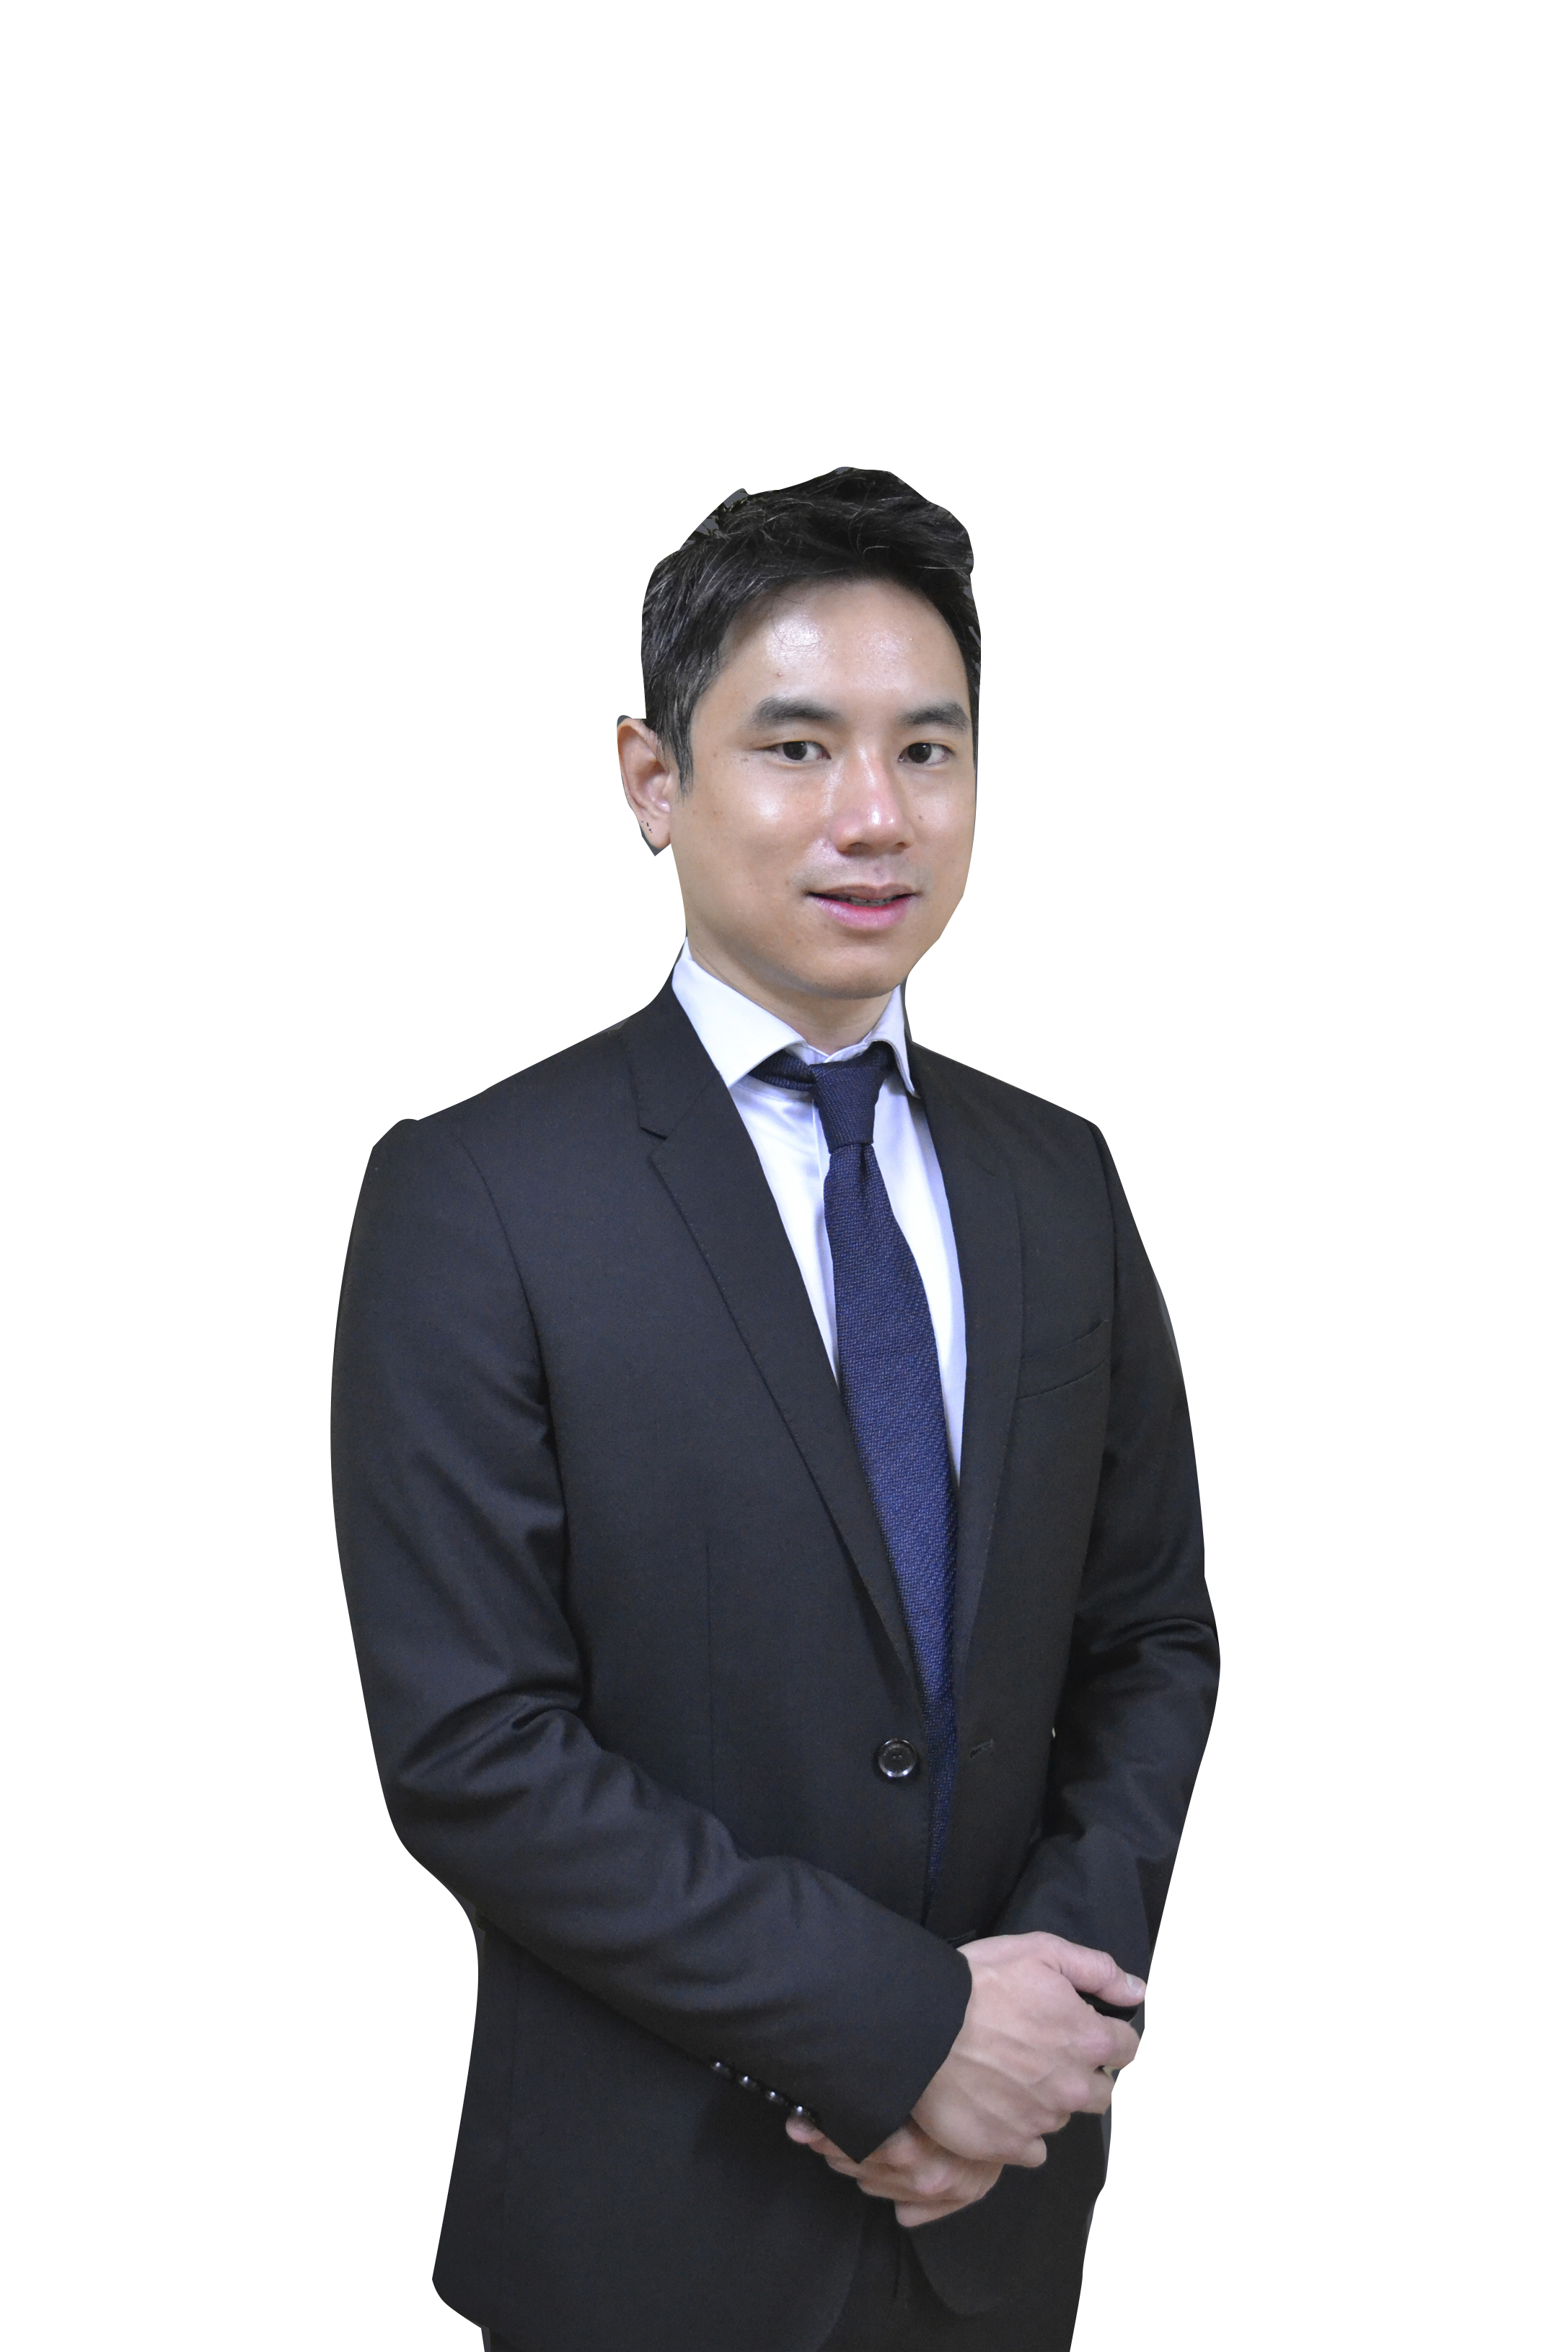 Dr Vincent Wong Chun Wei